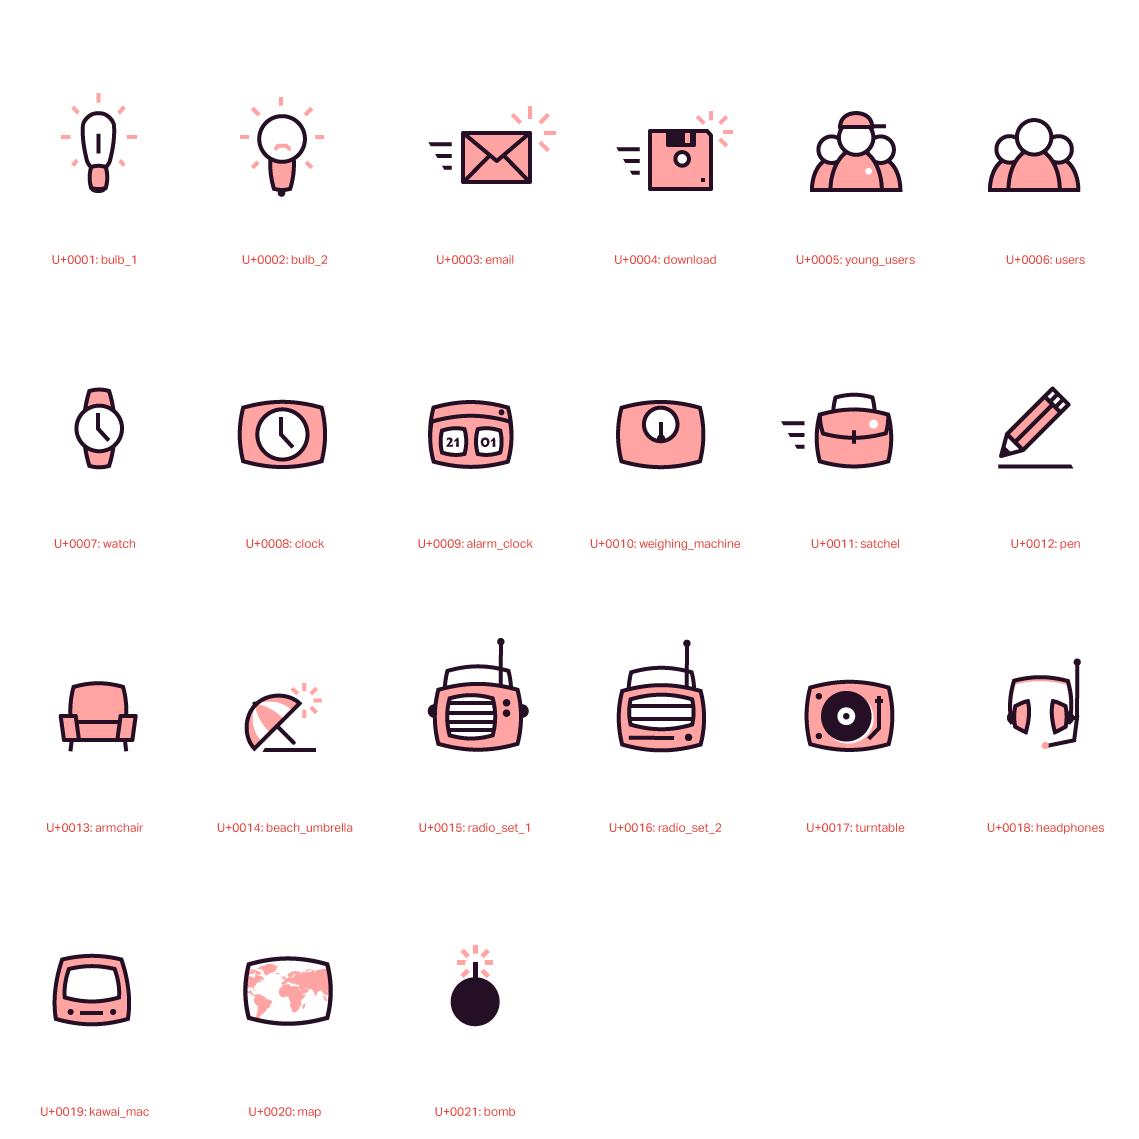 Assemble des icones dessinées spécialement pour le site de Plus Plus Prod